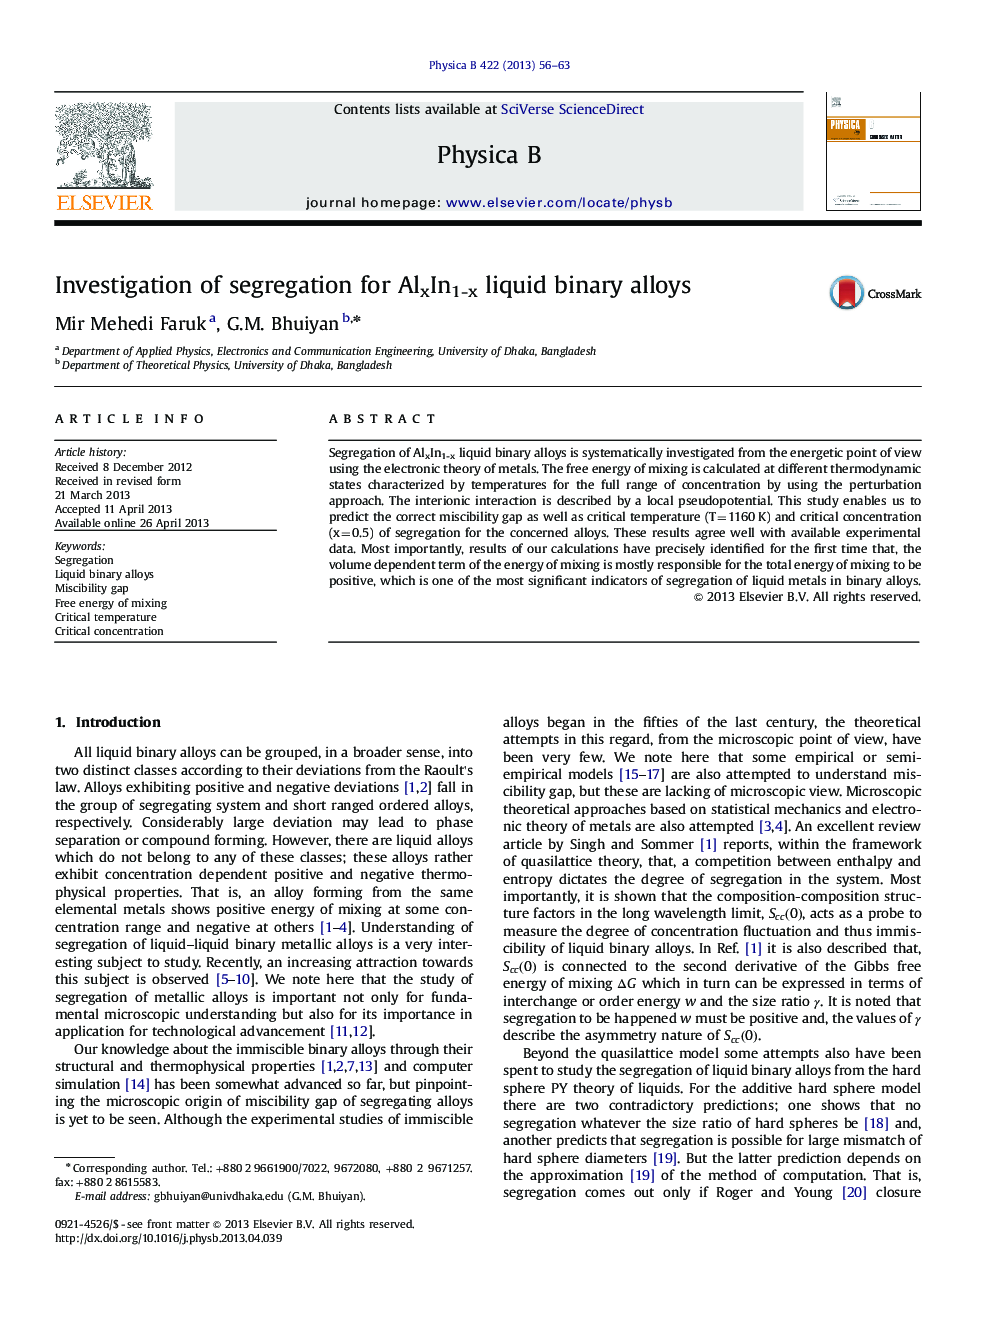 Investigation of segregation for AlxIn1-x liquid binary alloys